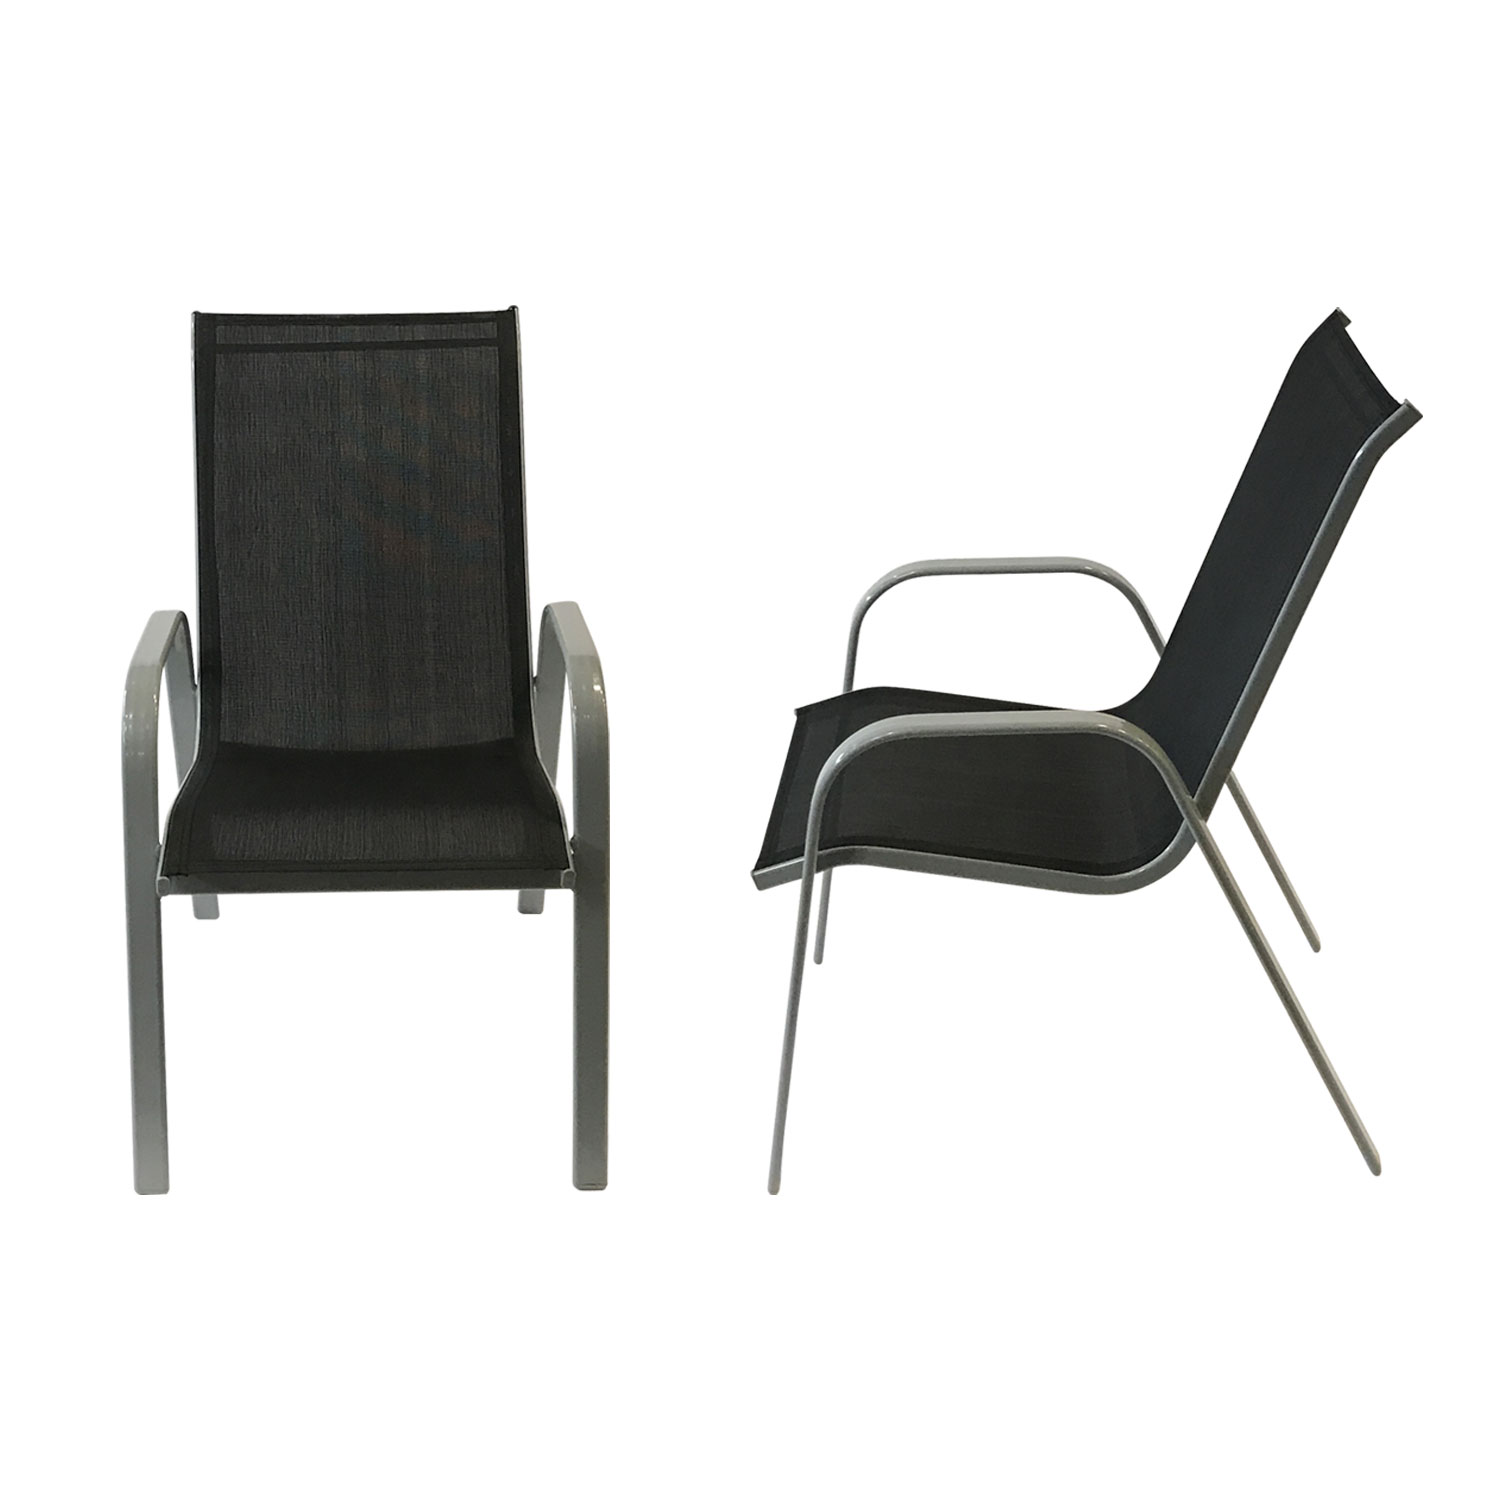 Satz von 6 Stühlen MARBELLA aus schwarzem Textilene - grauem Aluminium